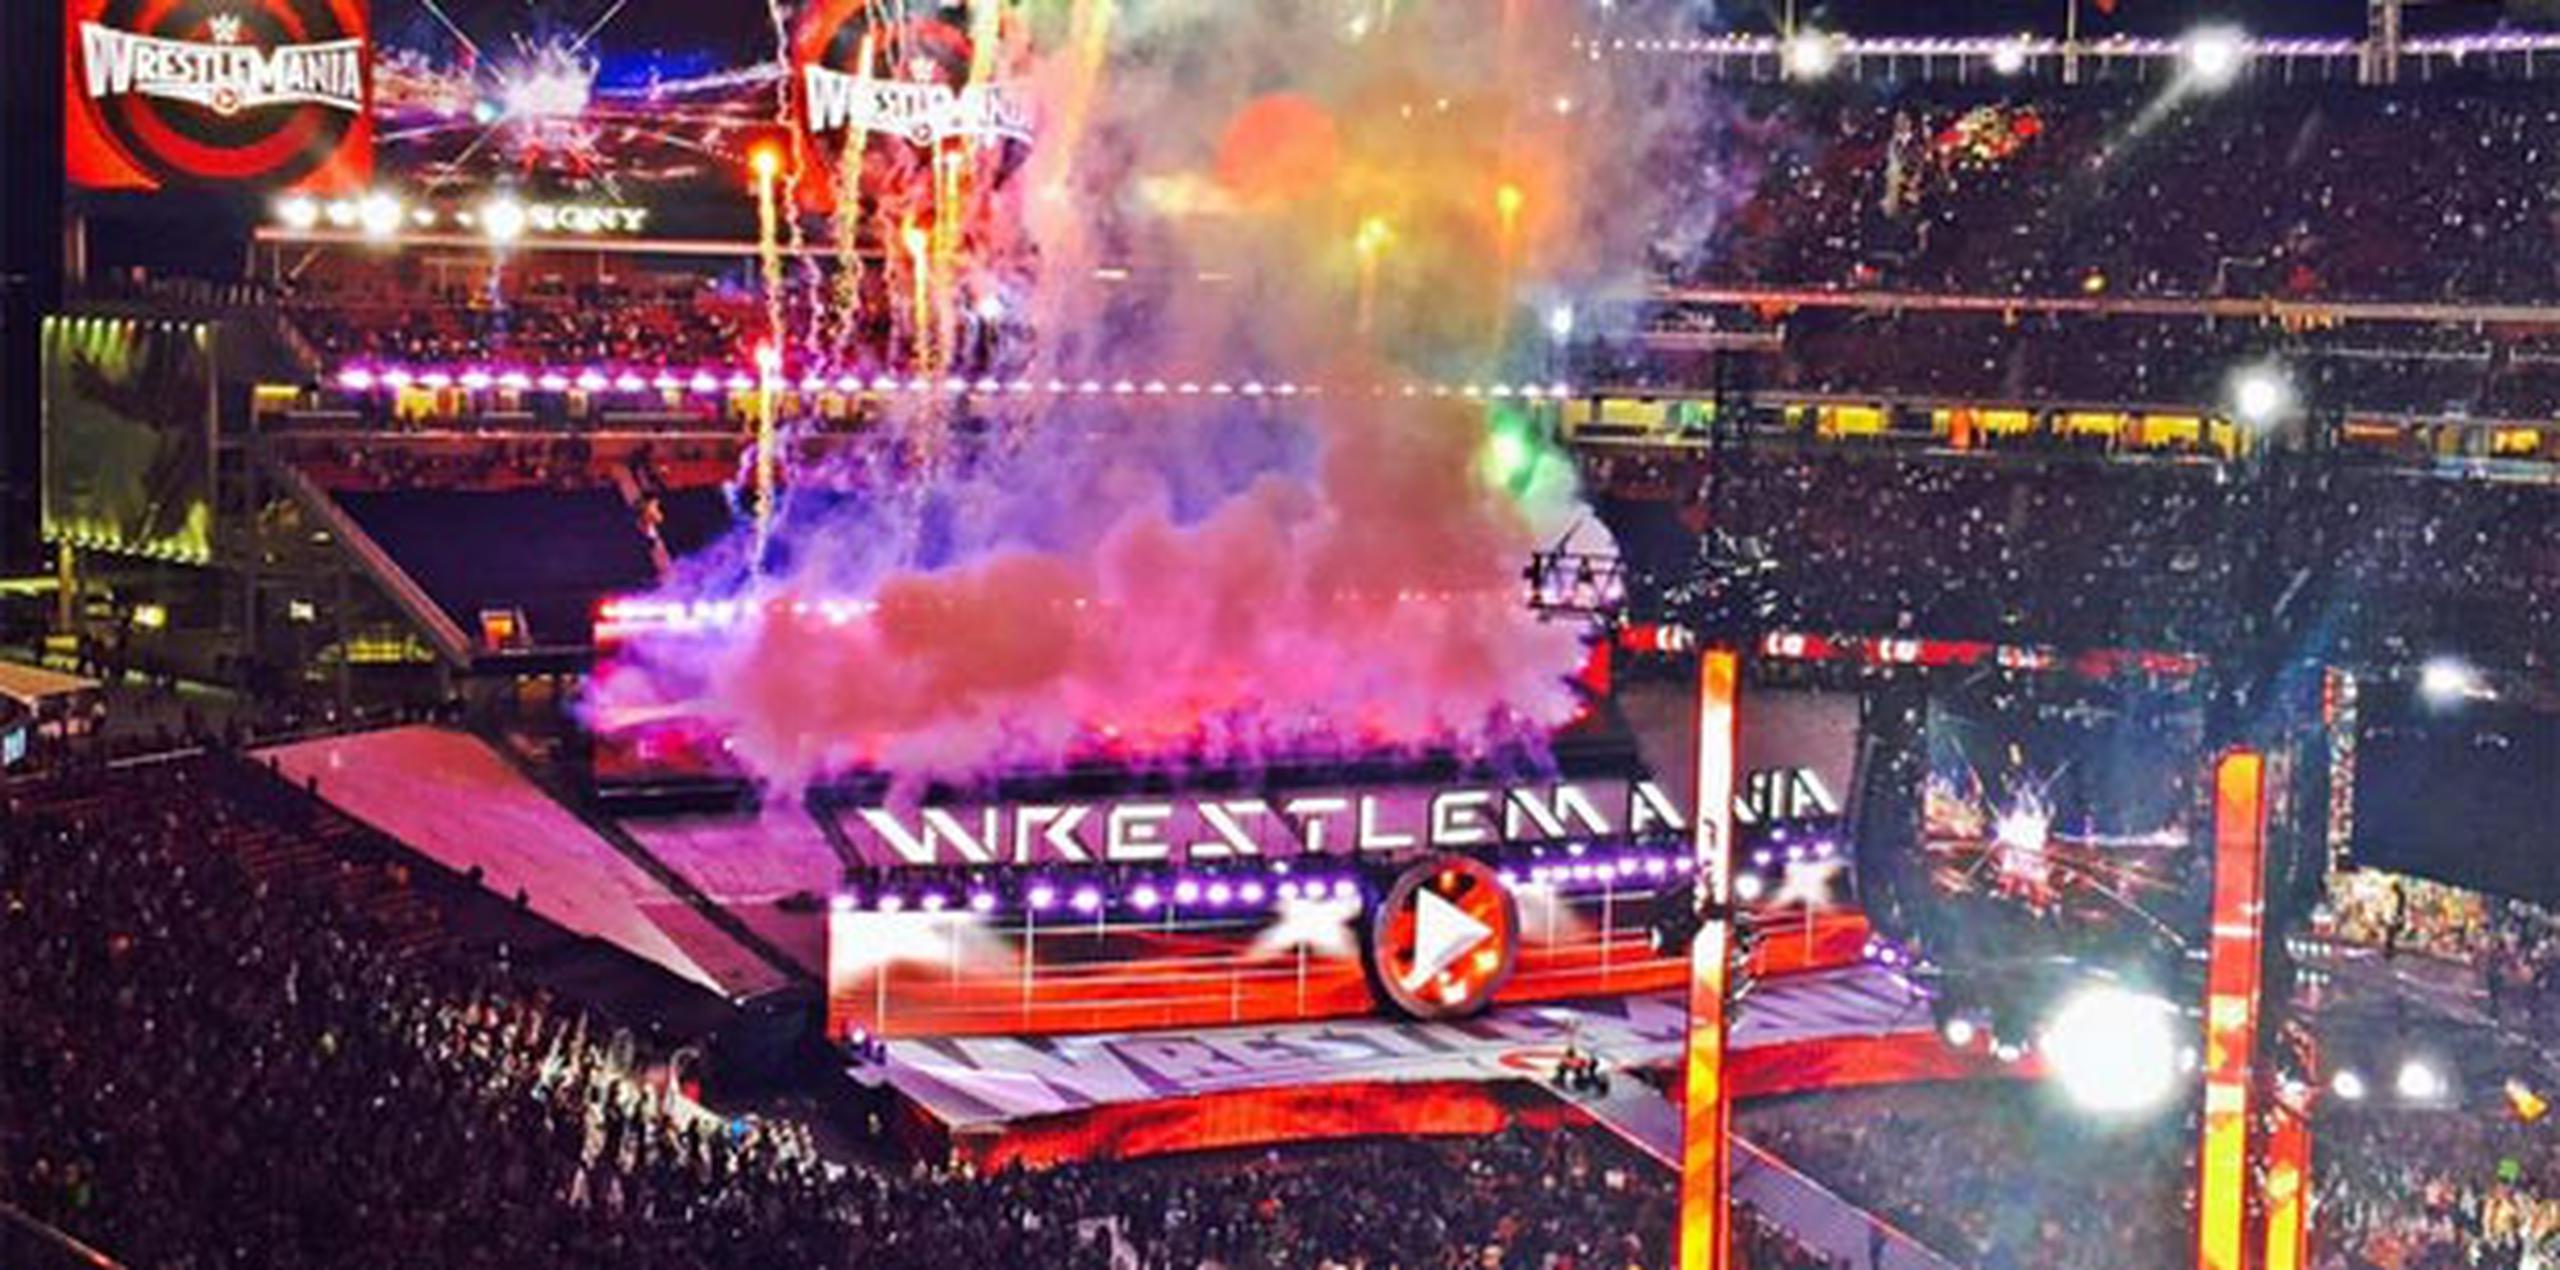 La WWE se lució botando la casa por la ventana con tremendas sorpresas que deleitaron a los más de 76,000 fieles que se dieron cita al Levi’s Stadium de Santa Clara, California. (Twitter: @LevisStadium)